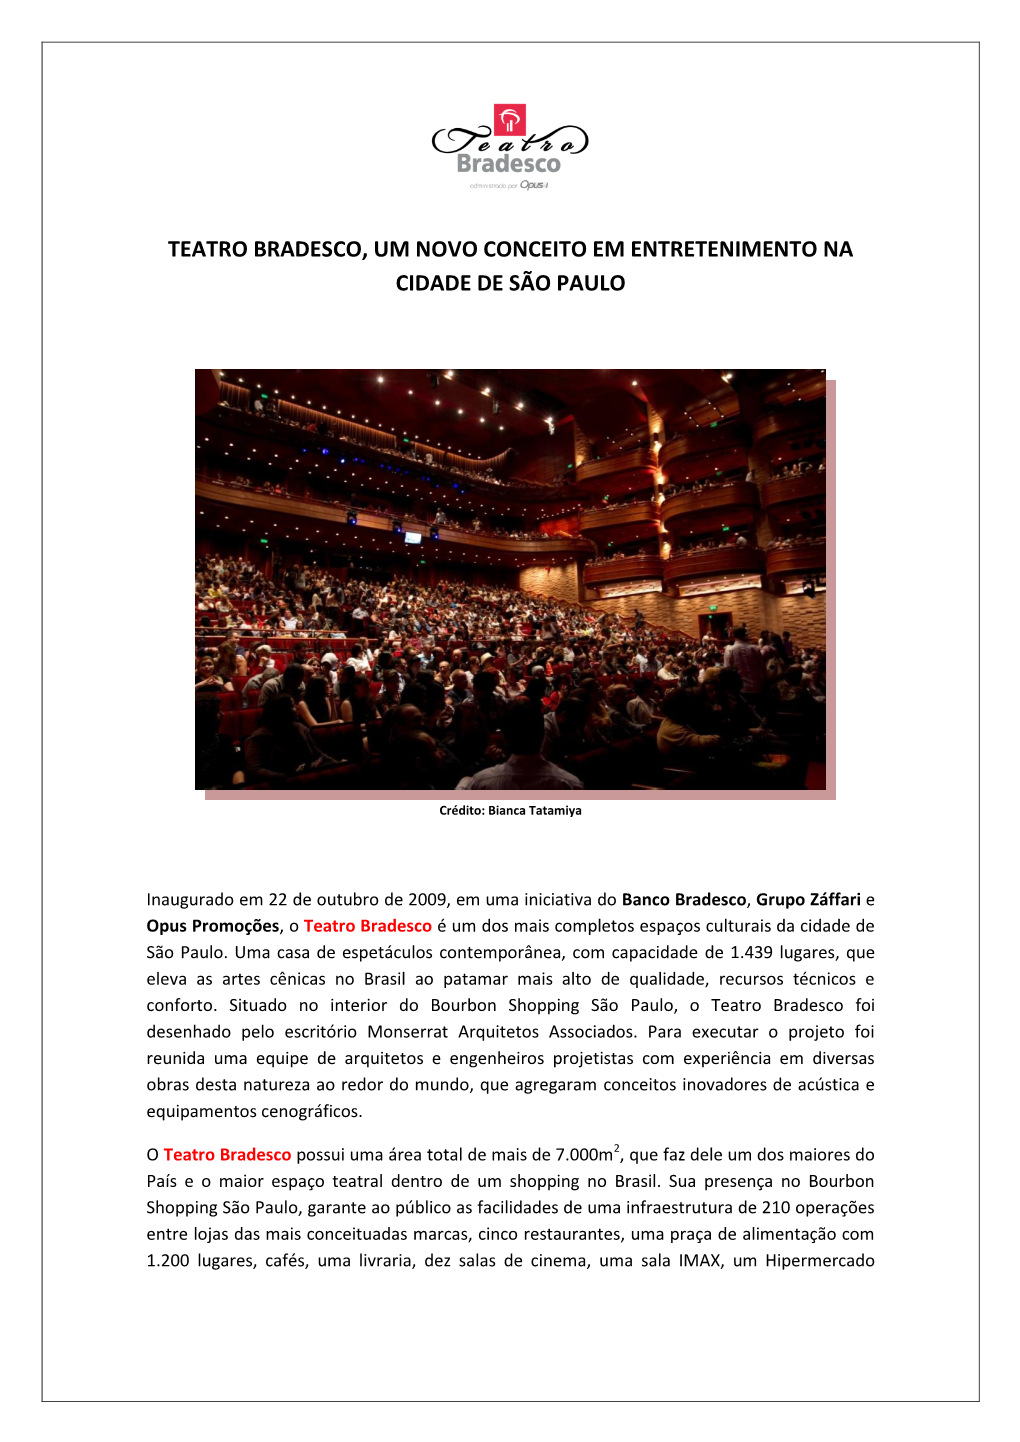 Teatro Bradesco, Um Novo Conceito Em Entretenimento Na Cidade De São Paulo